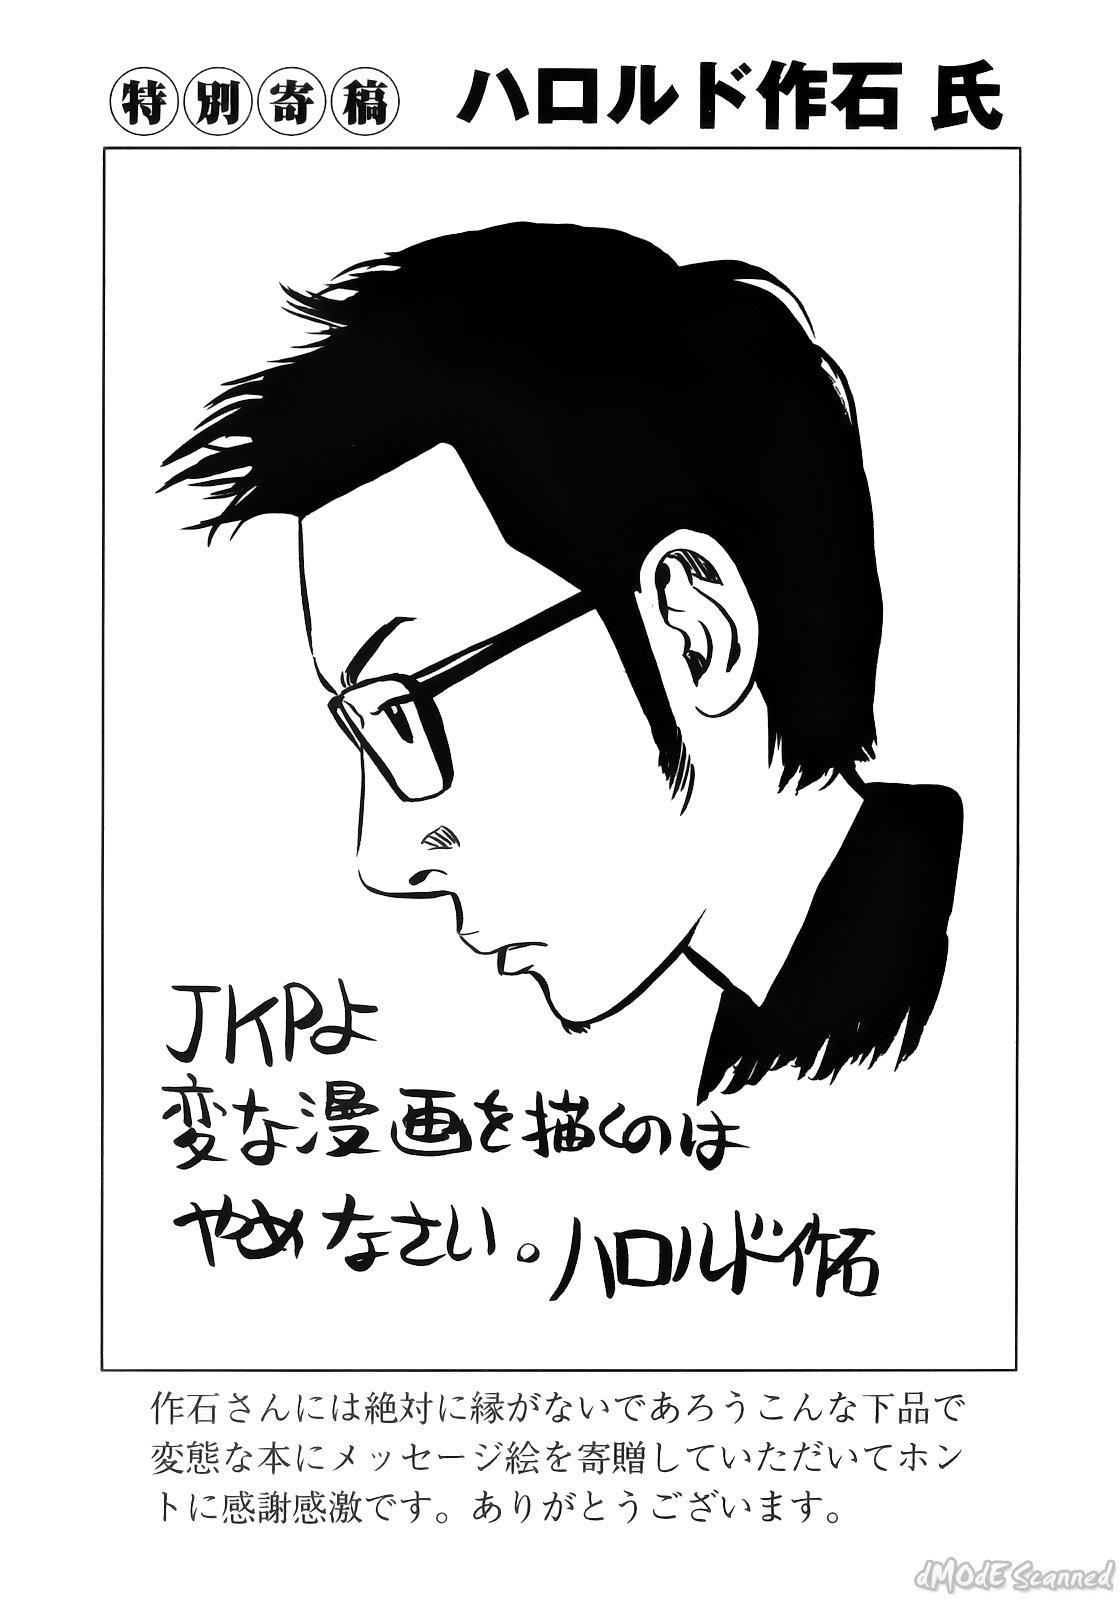 [John K. Pe-ta] John K. Pe-ta no Sekai - JKP's World 185